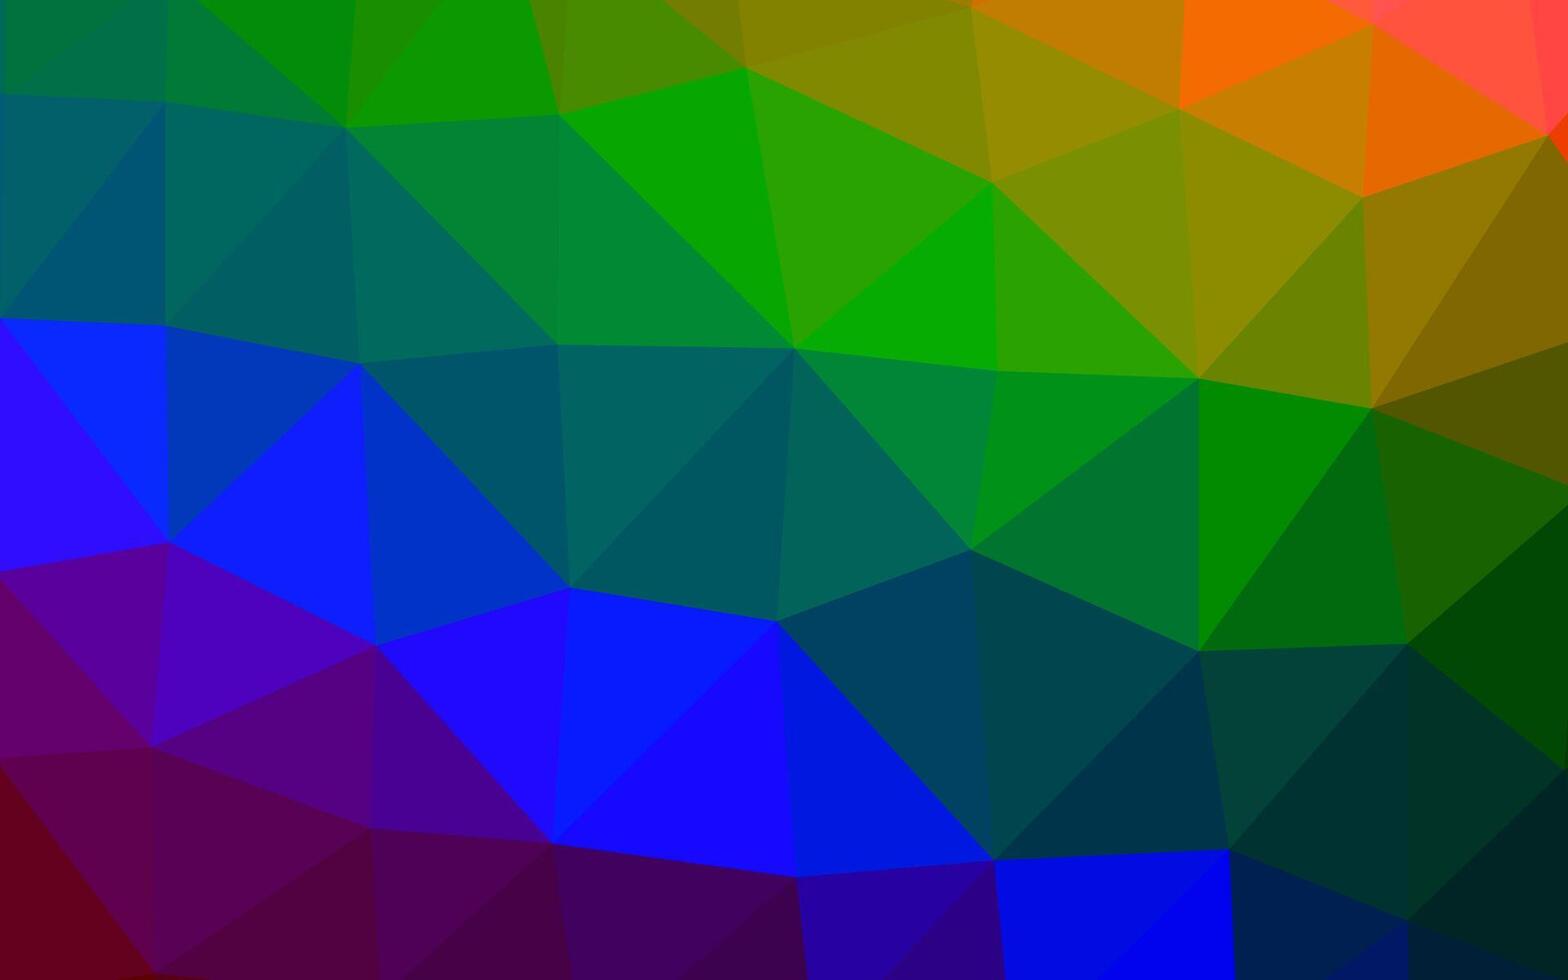 modelo poligonal de vetor de arco-íris multicolorido escuro.